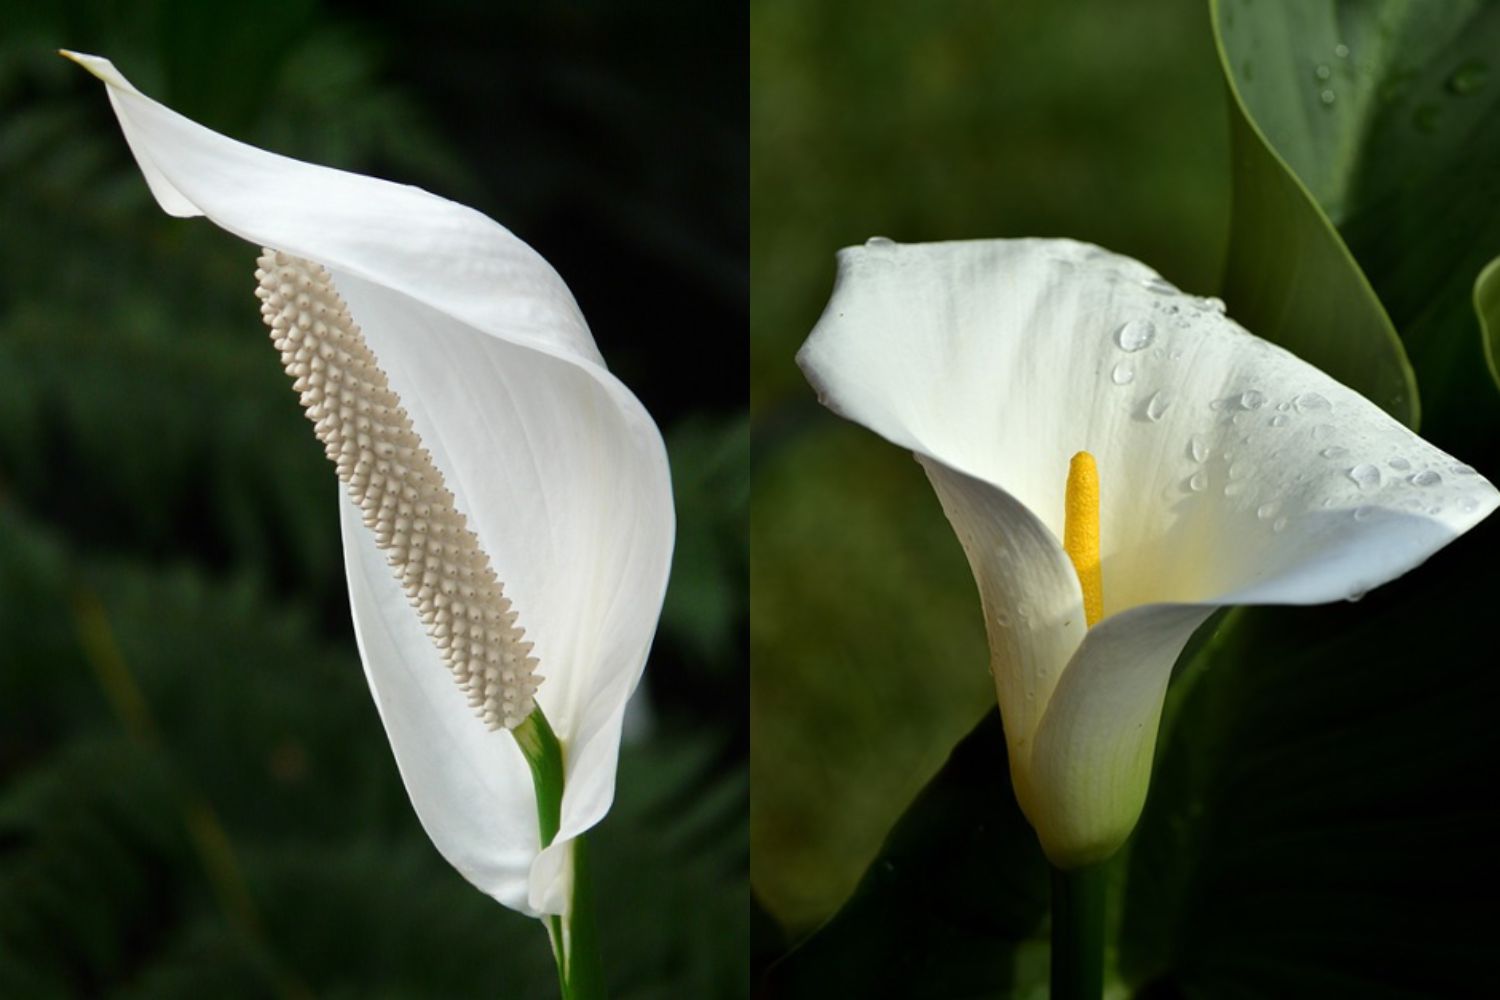 peace lily vs calla lily